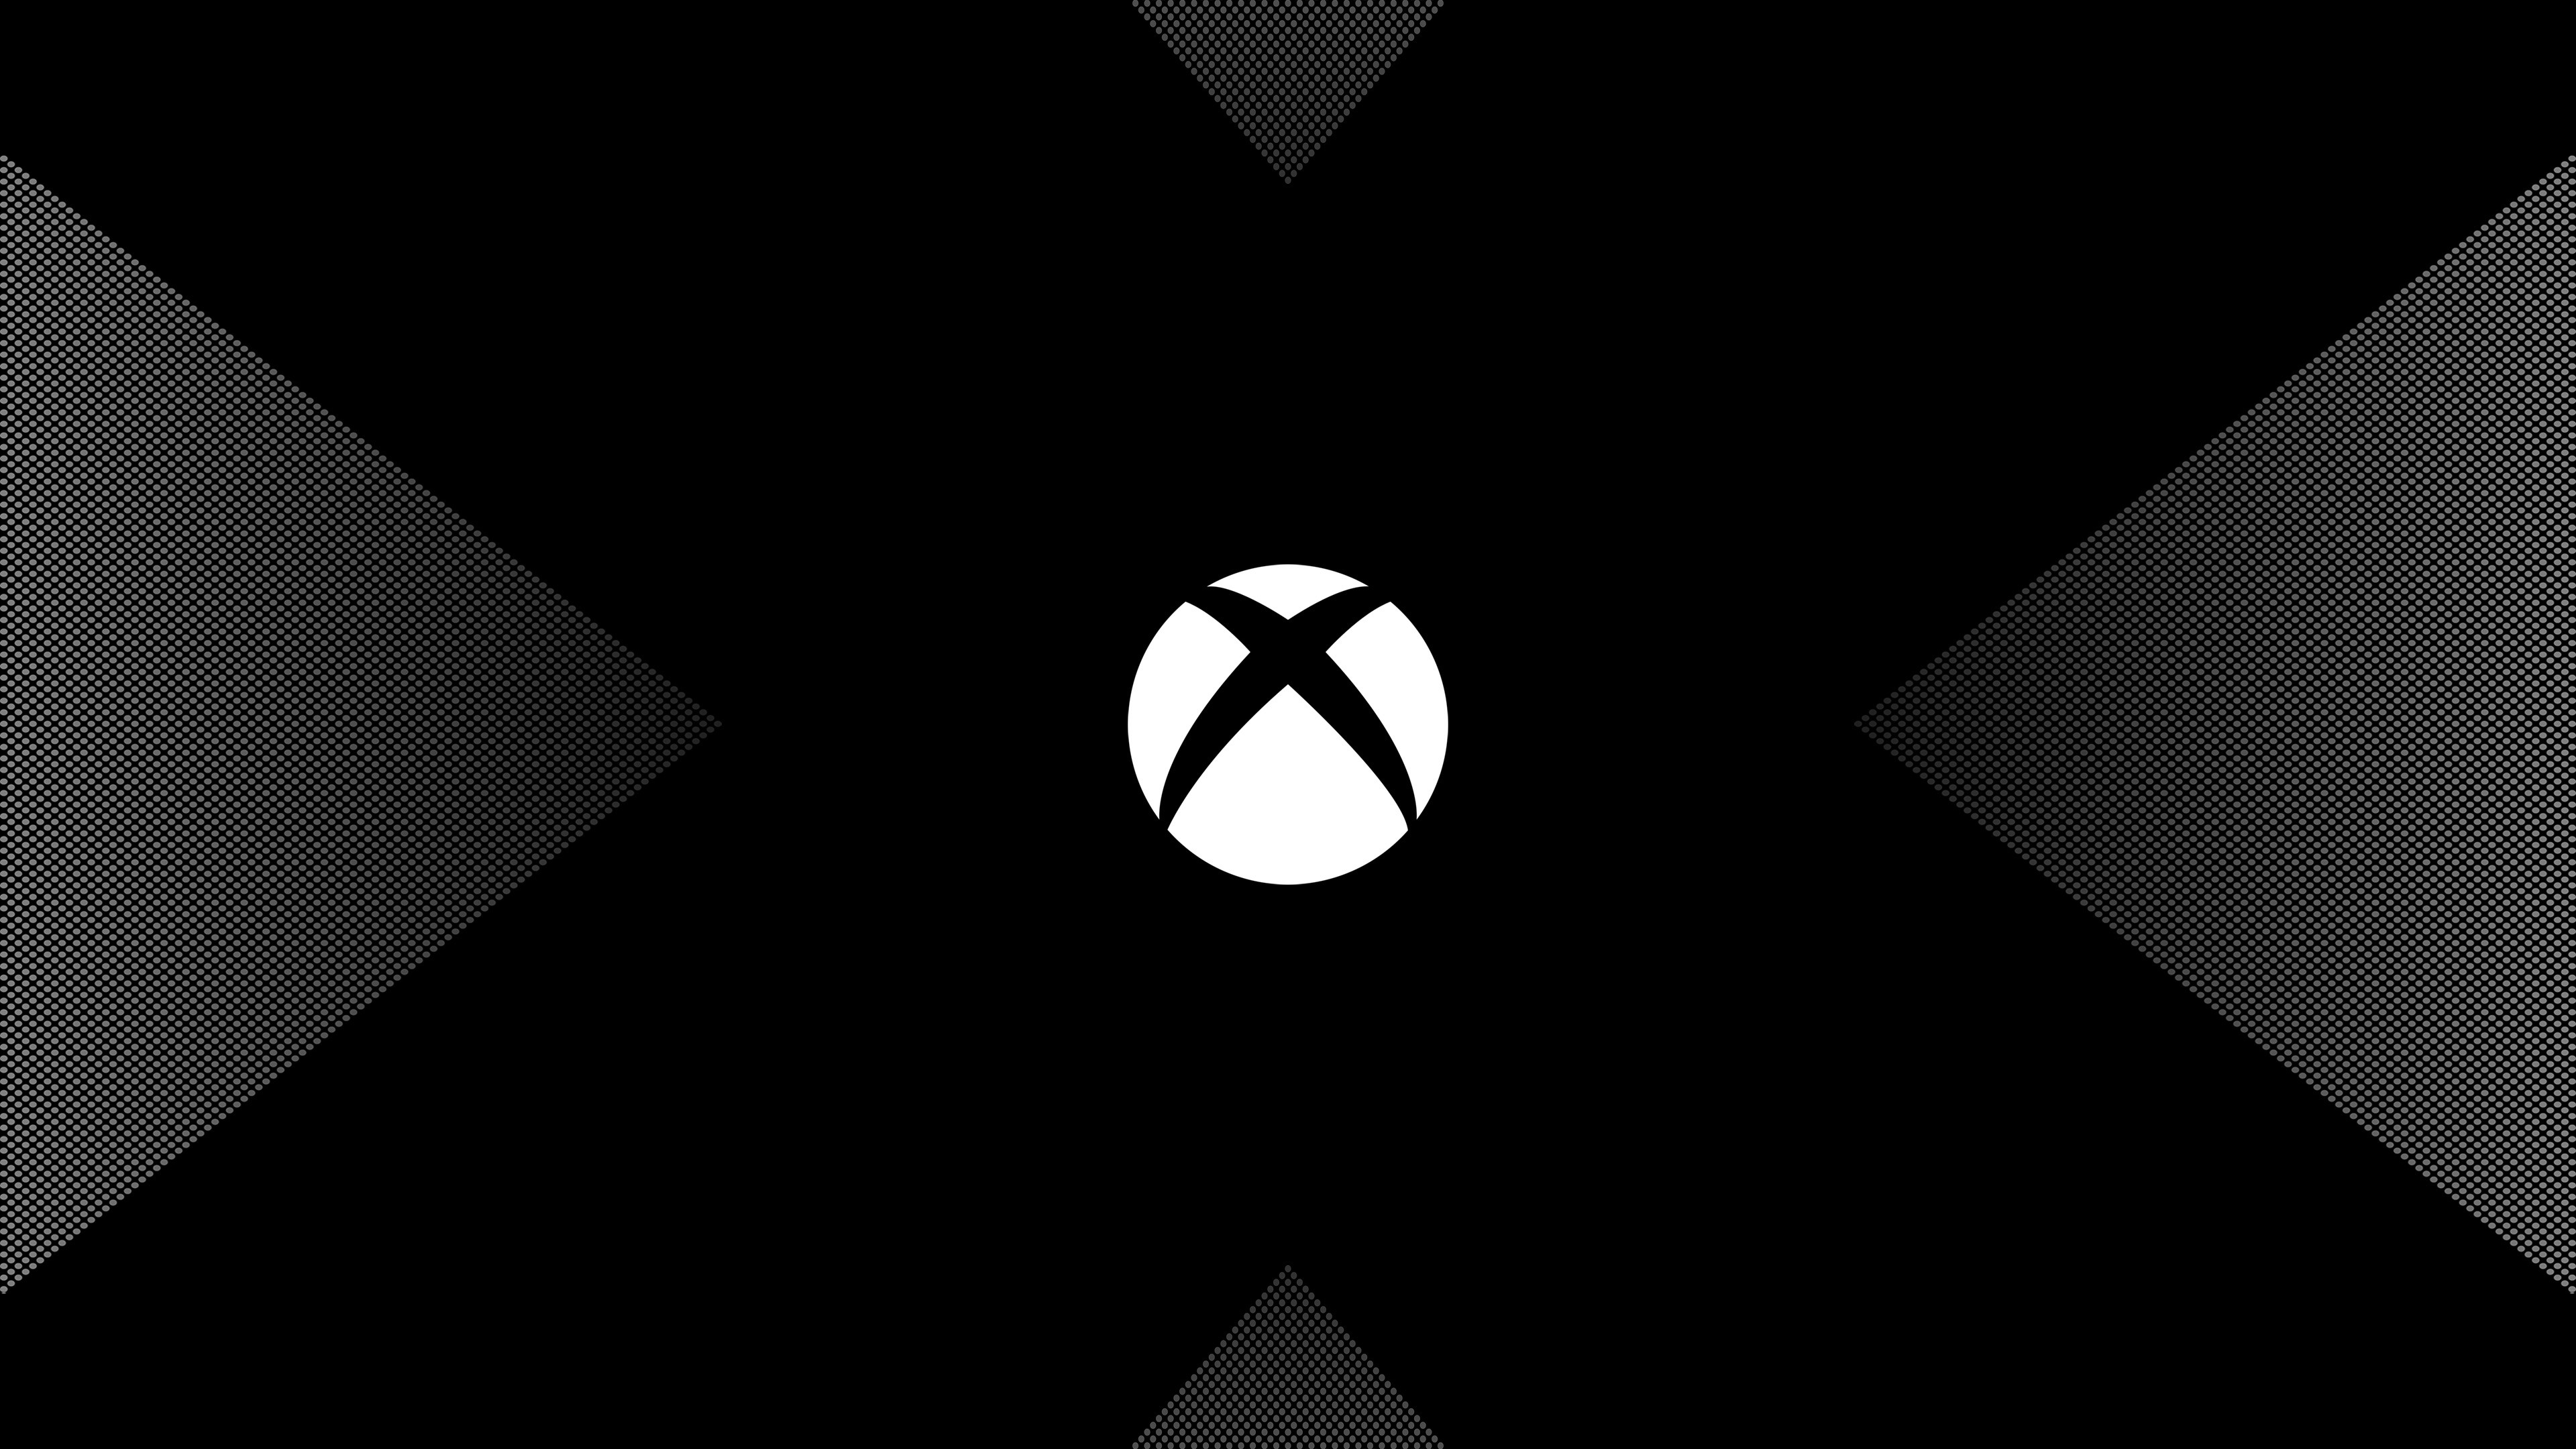 3840x2160 Xbox One X logo 4K